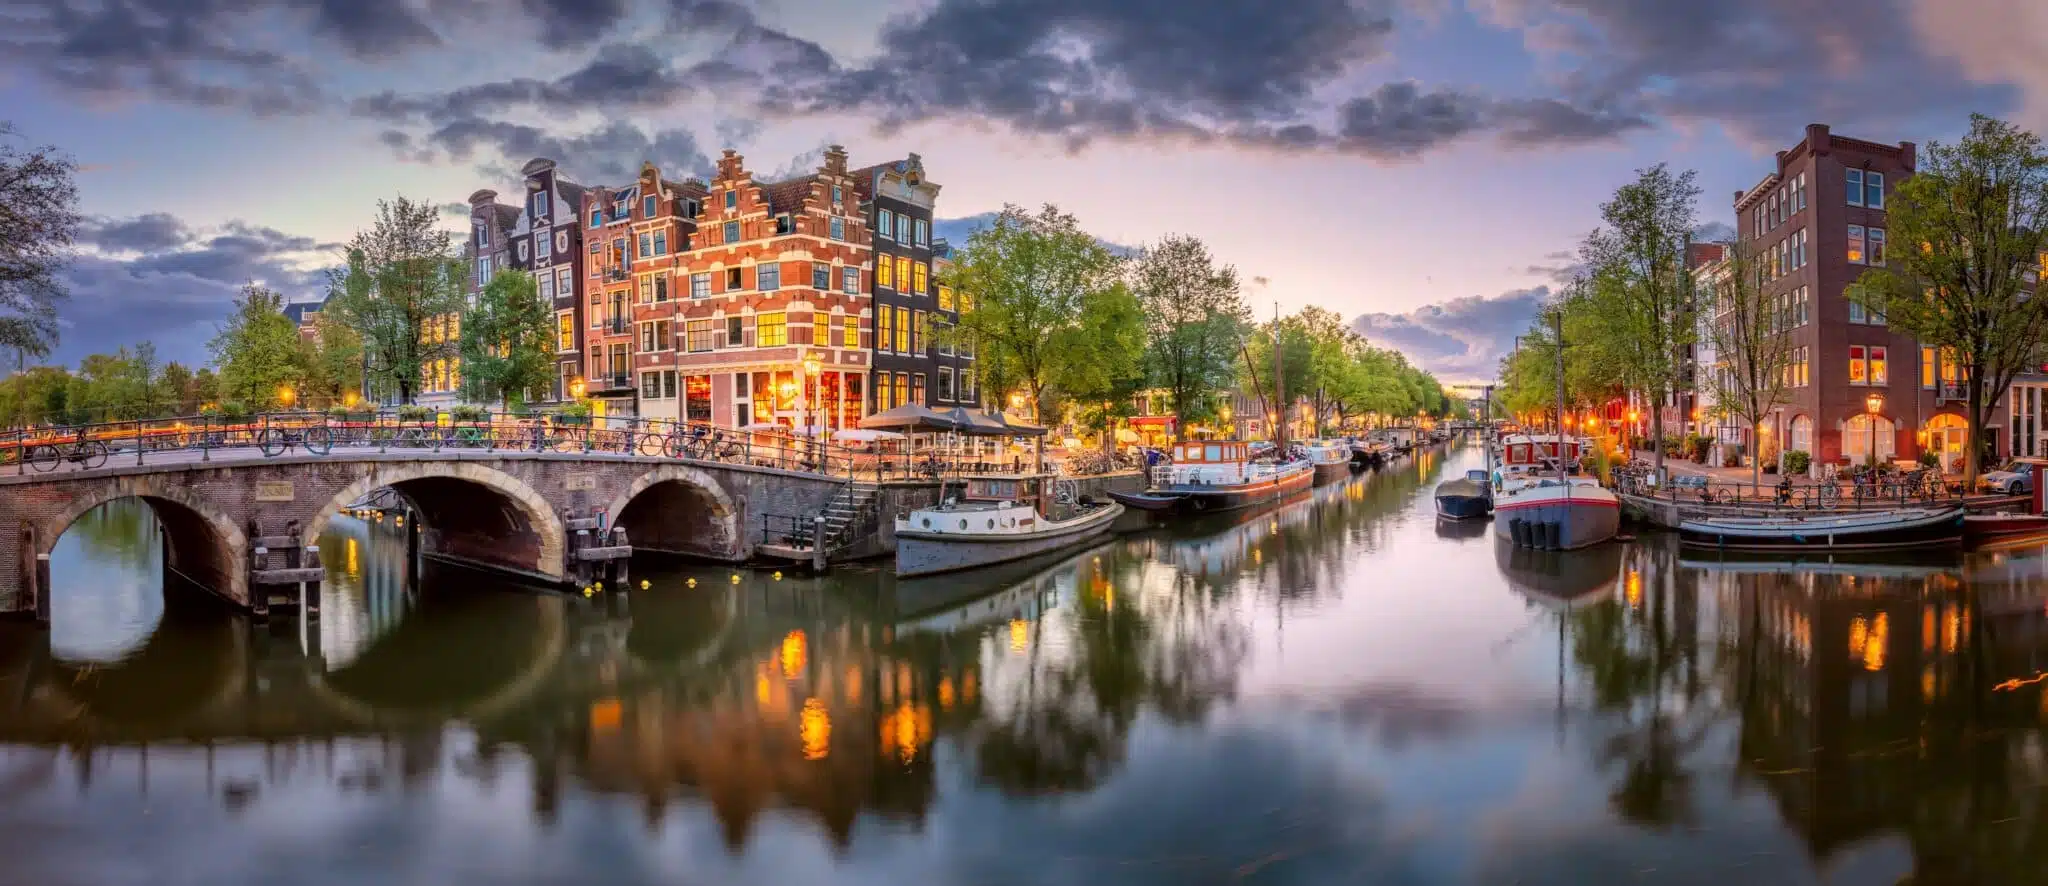 Vue panoramique du centre ville d'Amsterdam